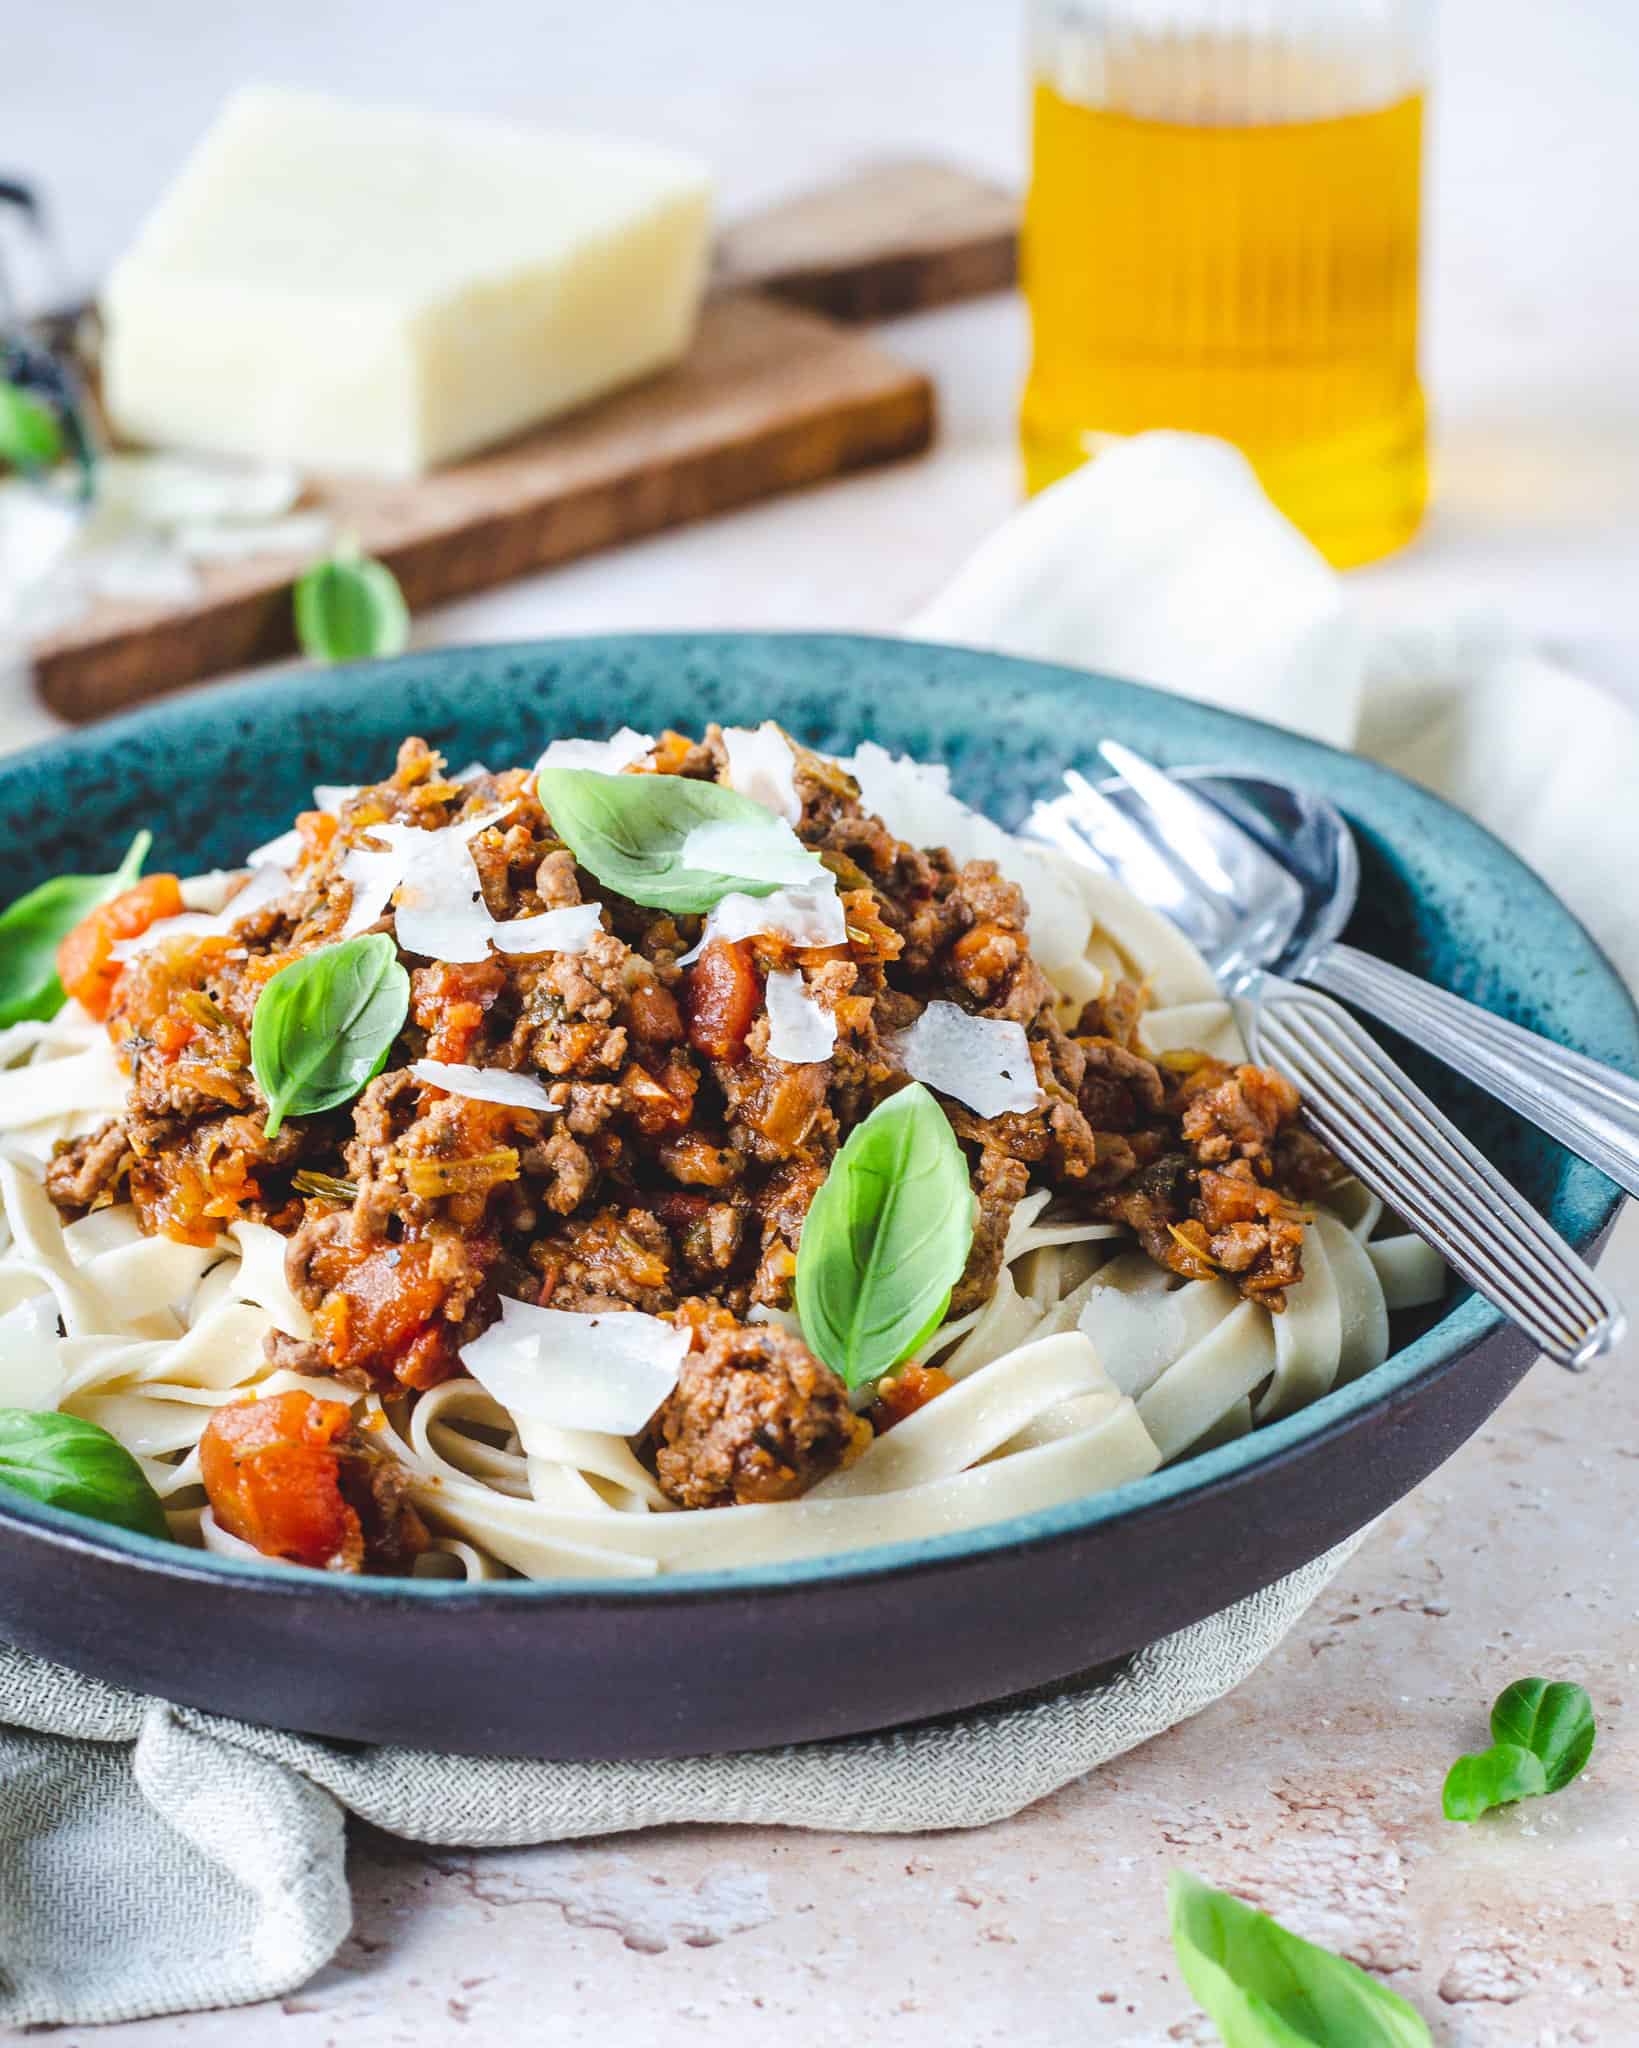 Lækker spaghetti bolognese med masser af grøntsager, toppet med parmesan